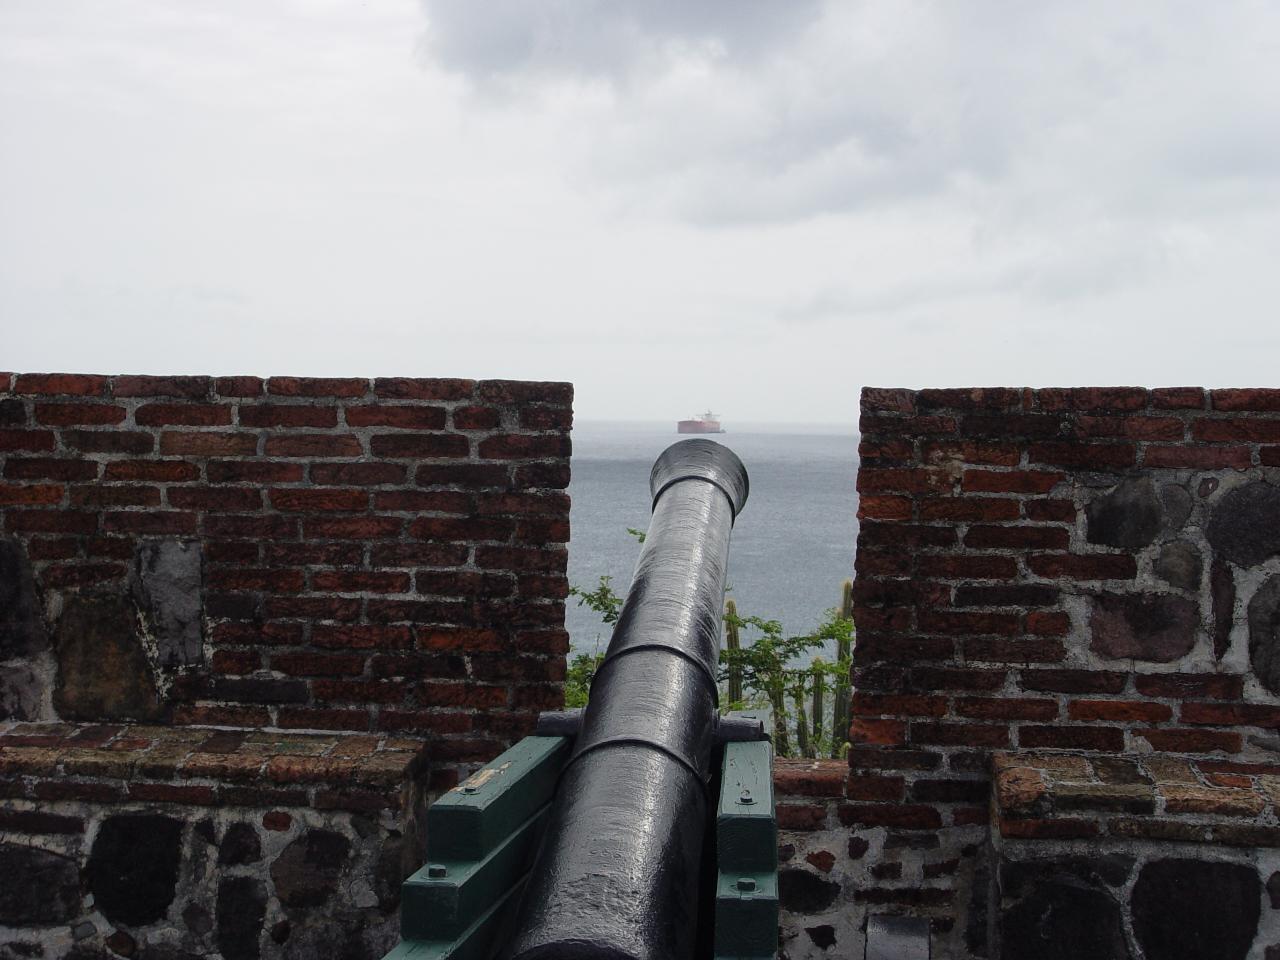 Cannon at Statia Fort, St Eustatius